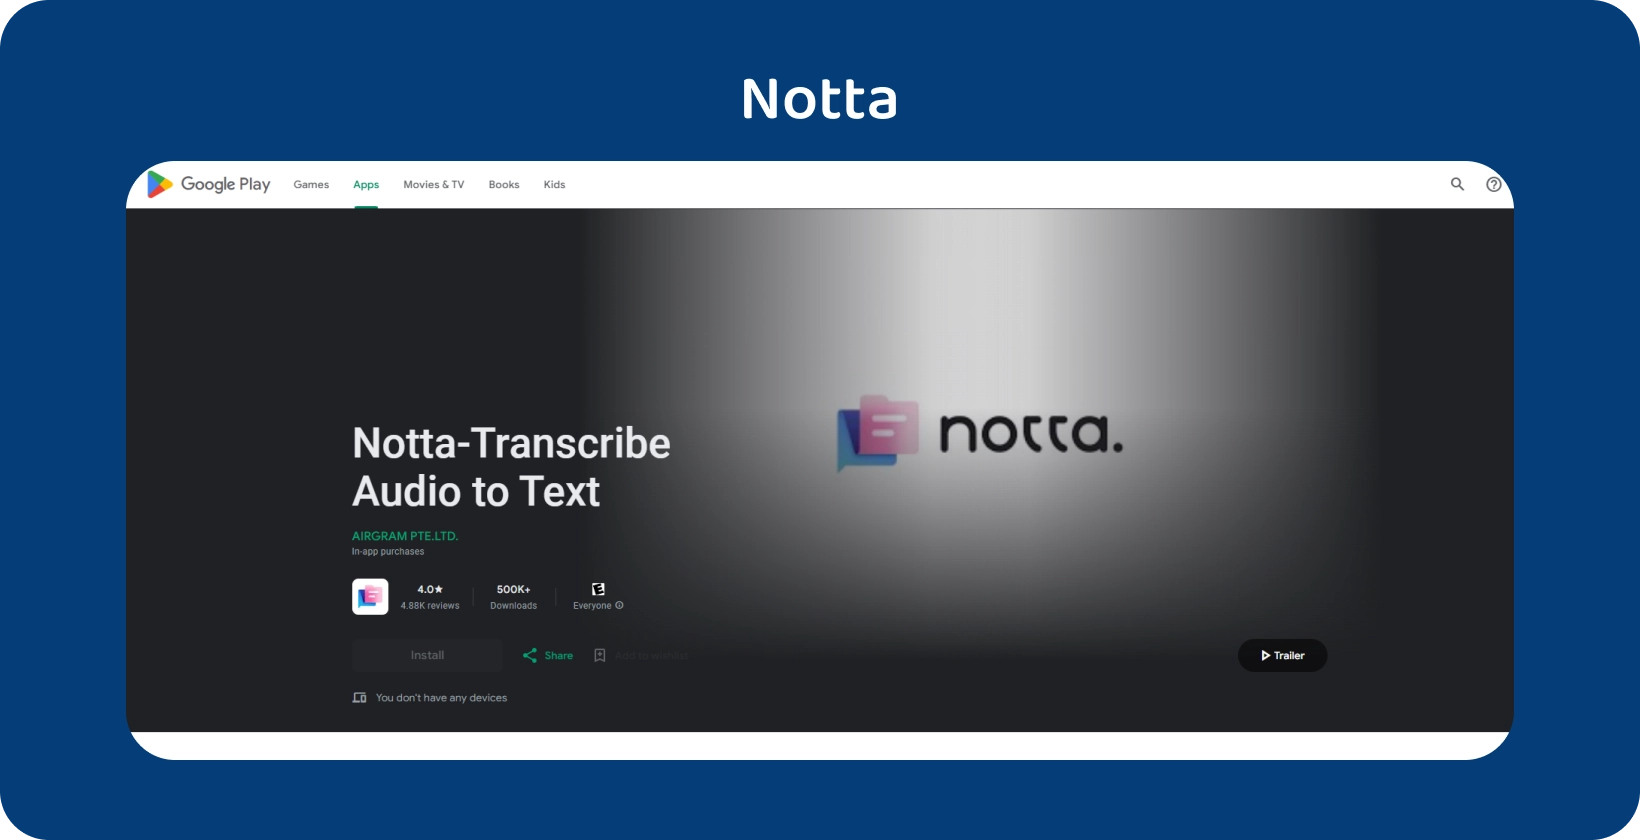 Notta.ai rakendus Google Play, mis näitab selle võimet transkribeerida heli Android täpseks tekstiks.